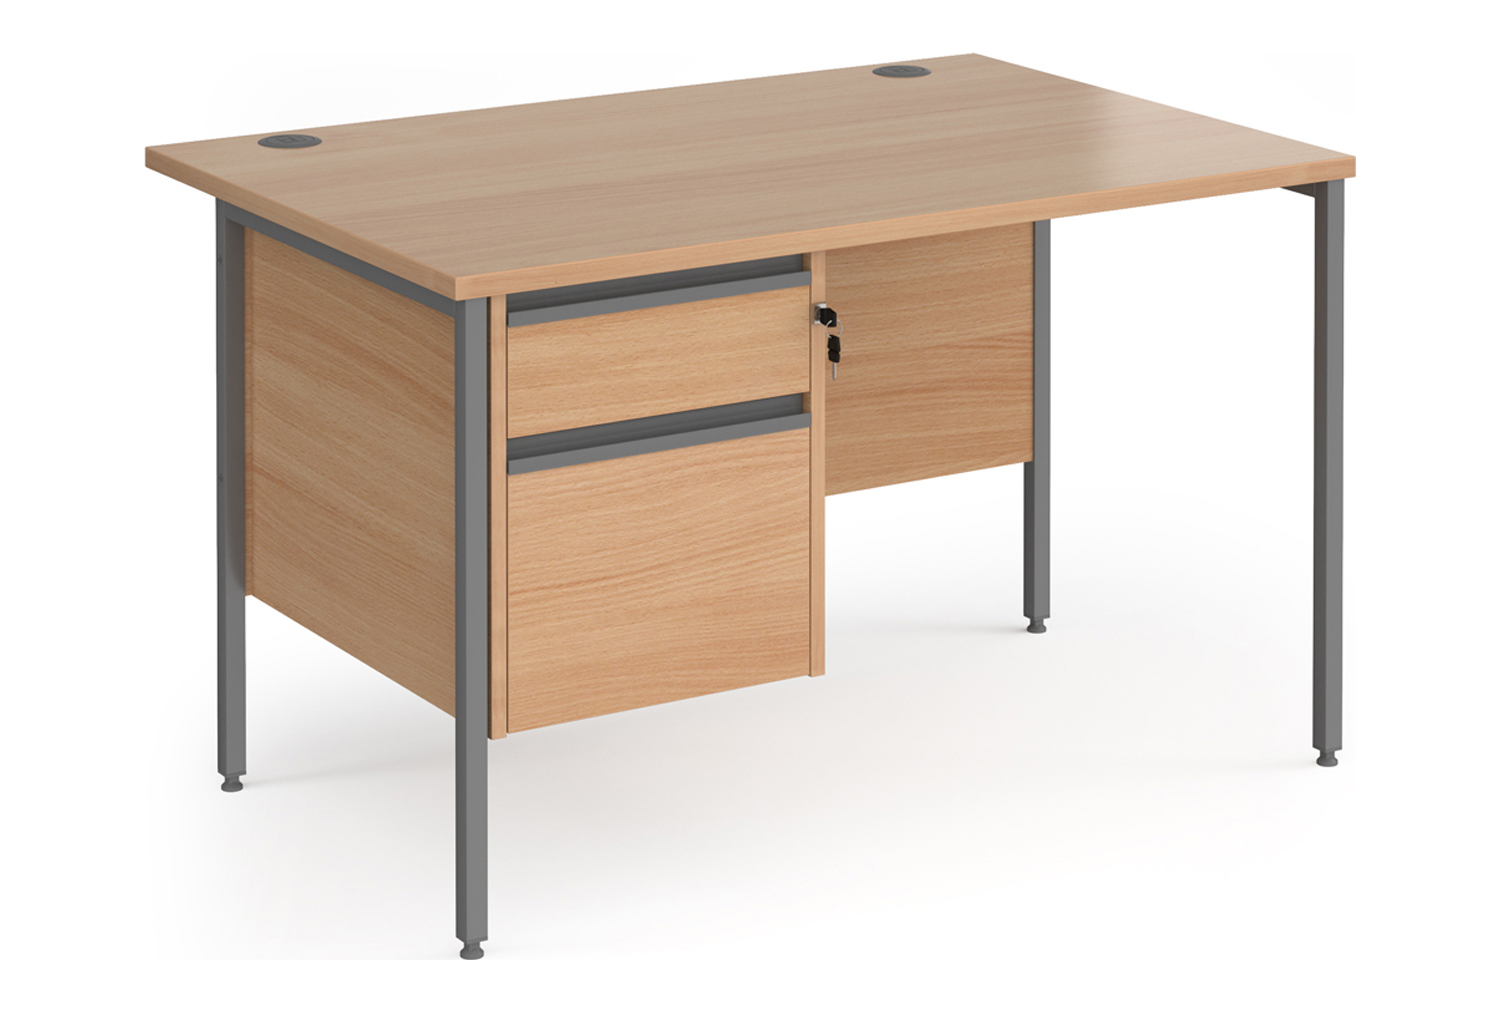 Value Line Classic+ Rectangular H-Leg Office Desk 2 Drawers (Graphite Leg), 120wx80dx73h (cm), Beech, Fully Installed